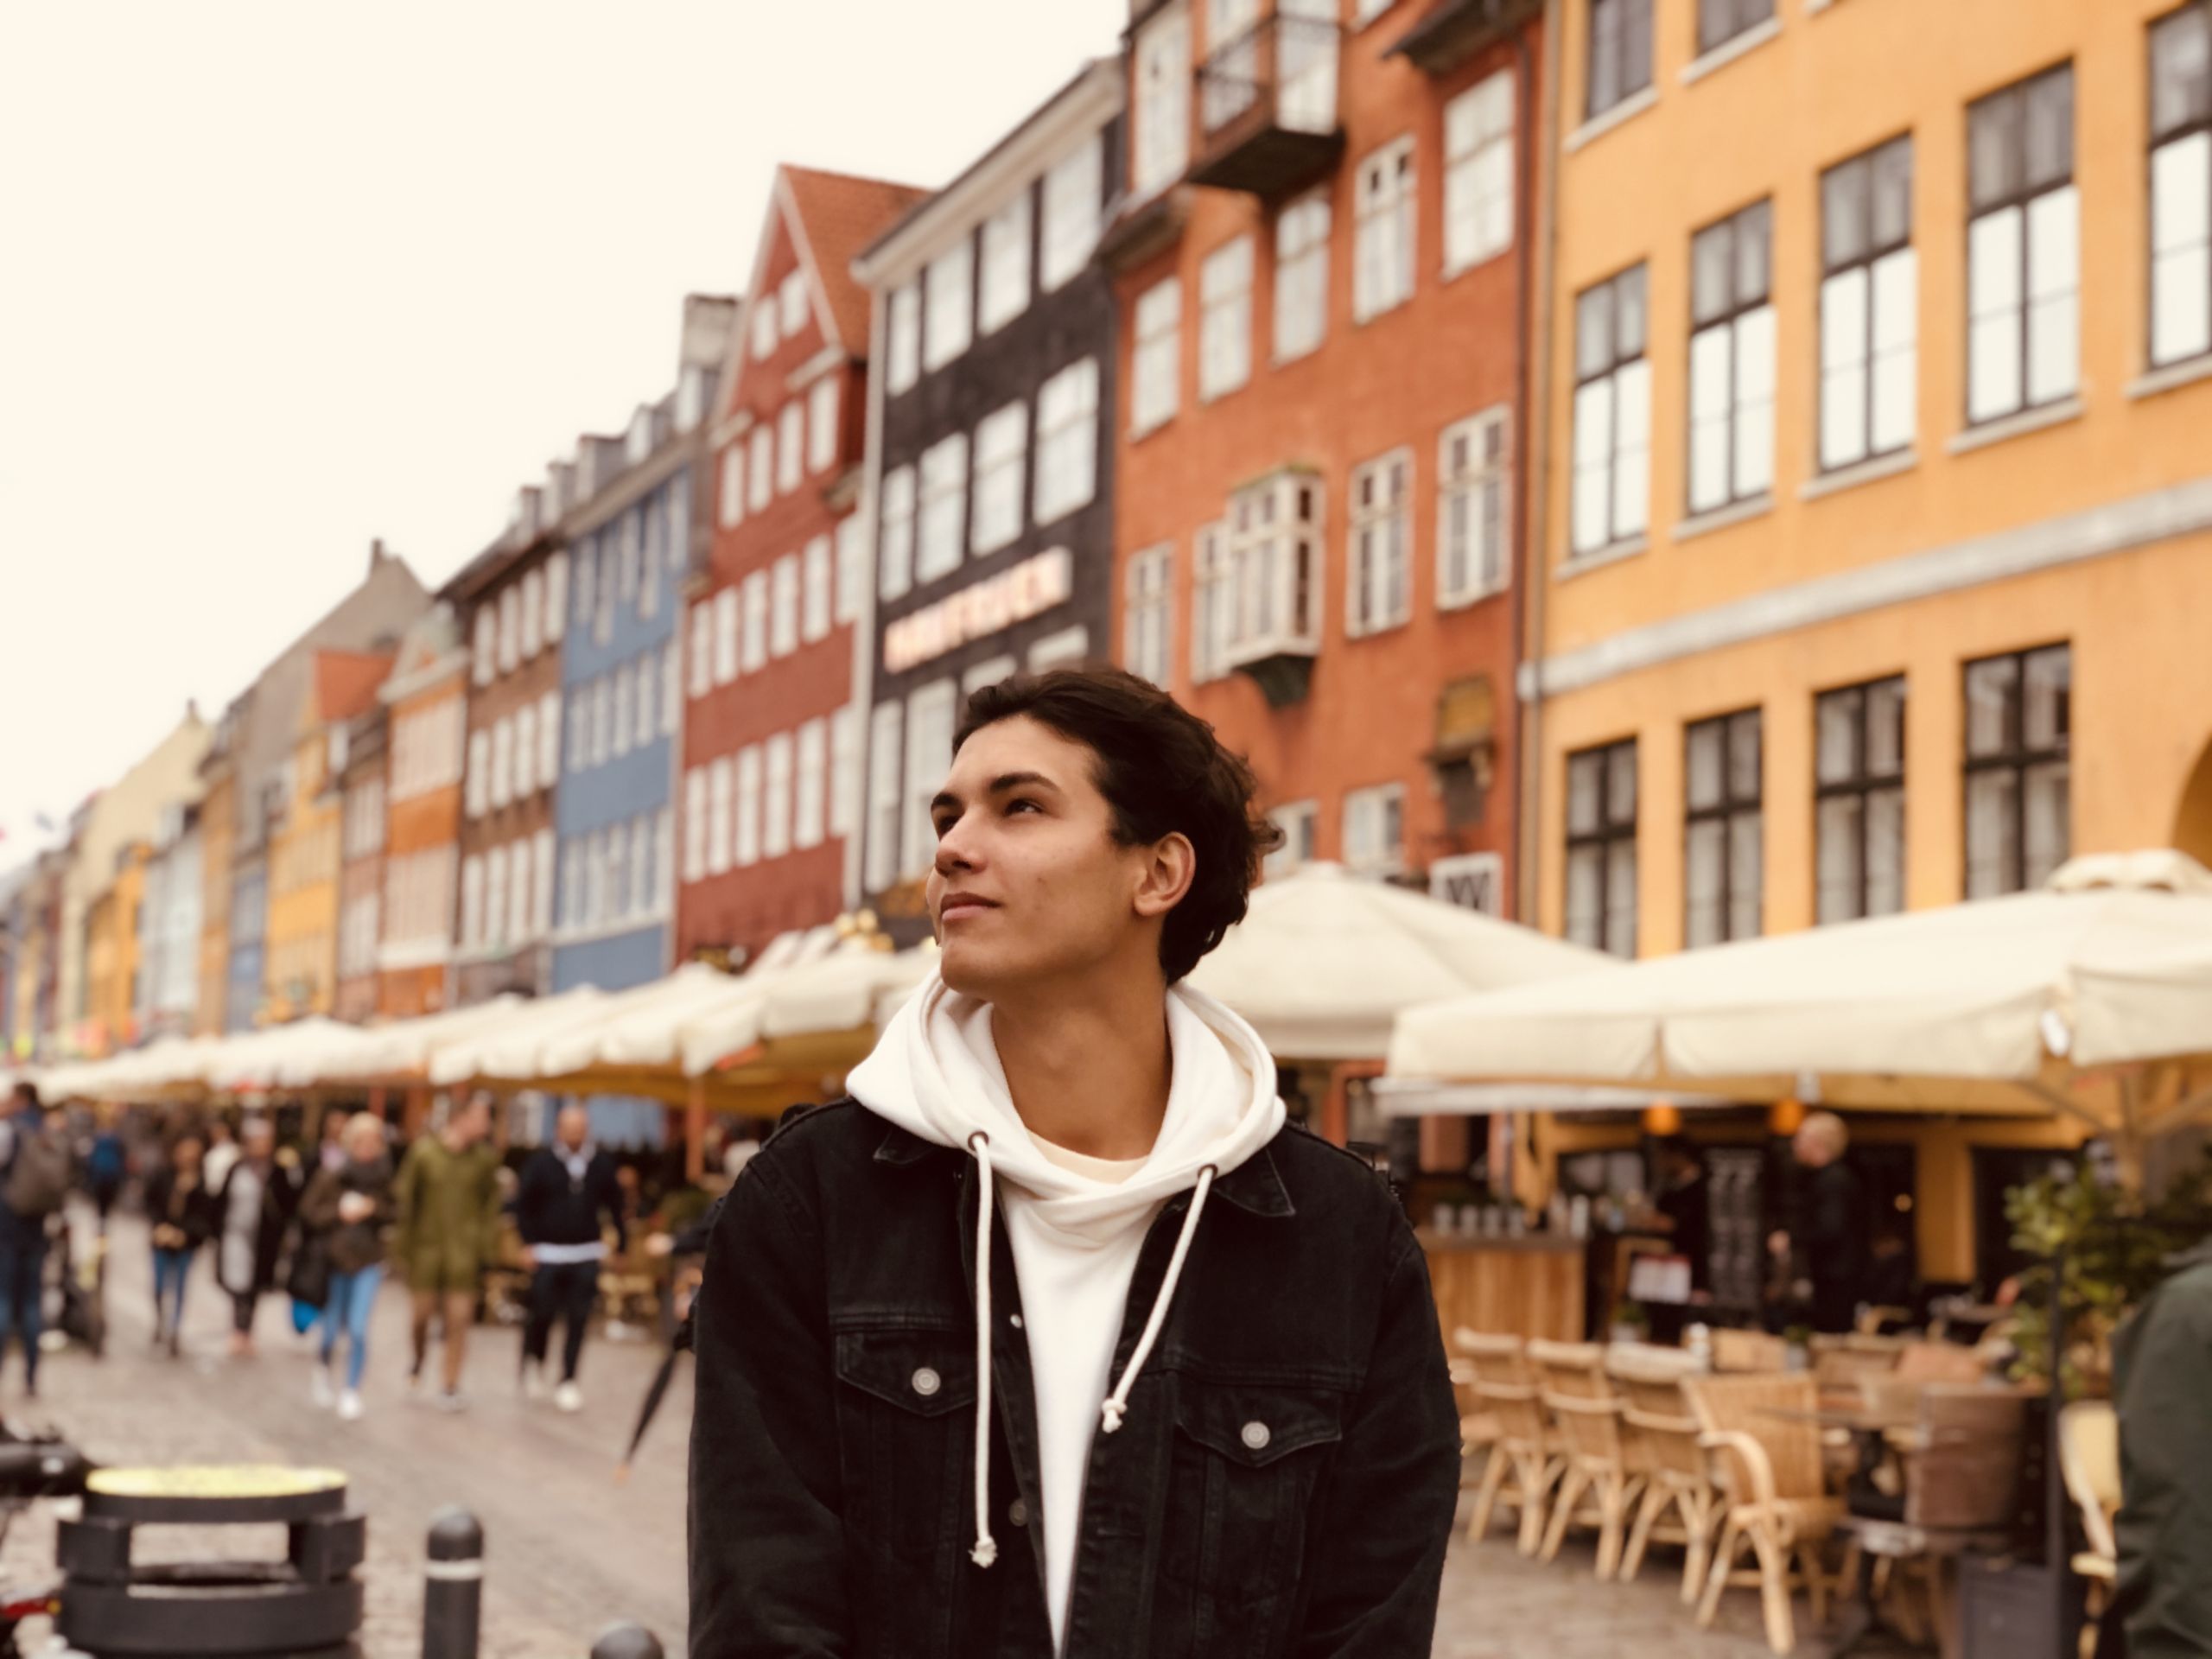 Guy standing in Nyhavn